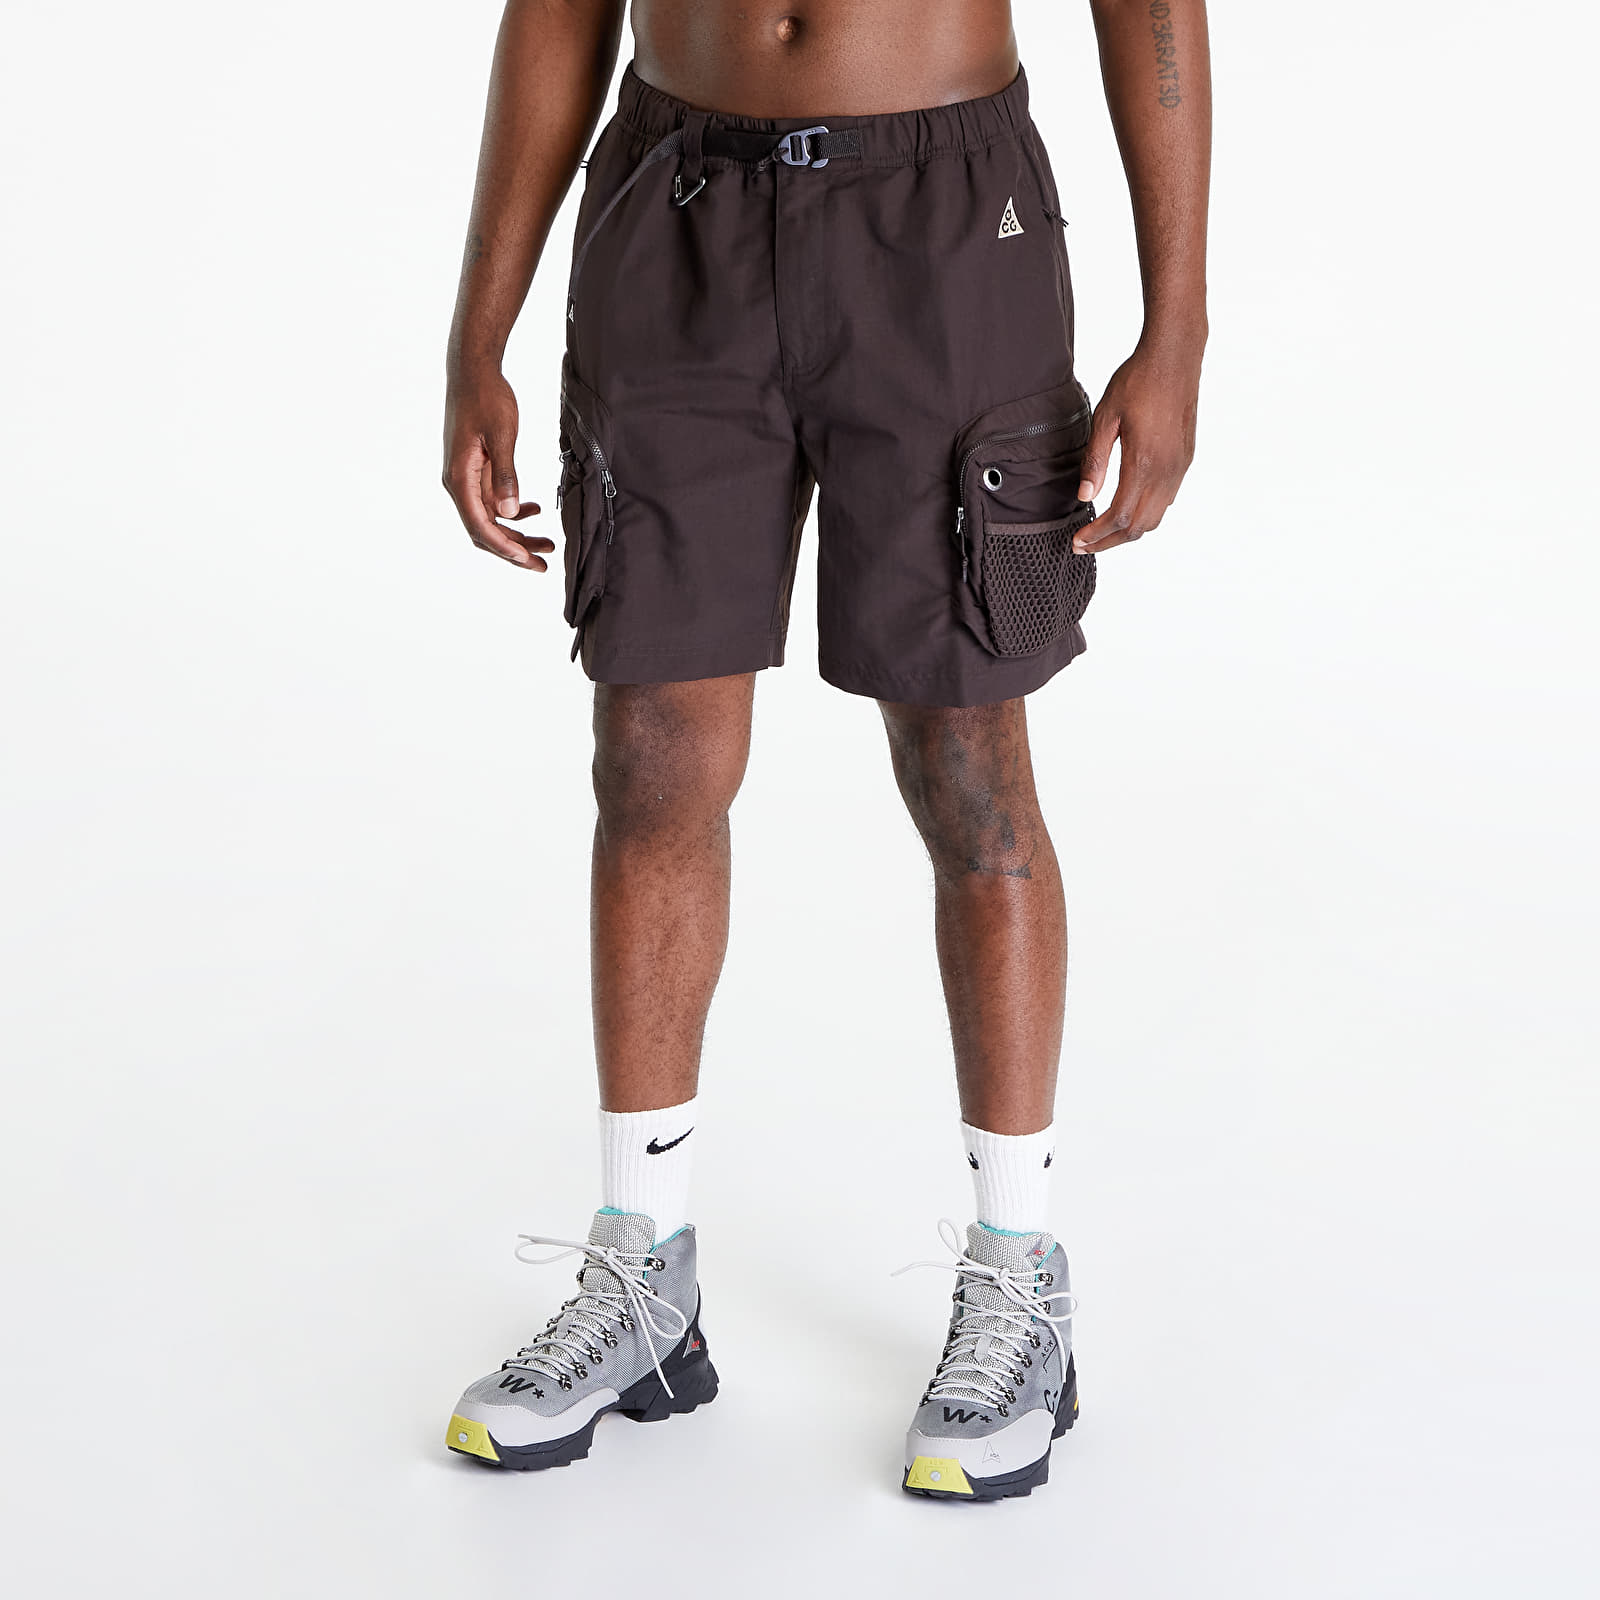 Shorts Nike ACG "Snowgrass" Men's Cargo Shorts Velvet Brown/ Black/ Sanddrift